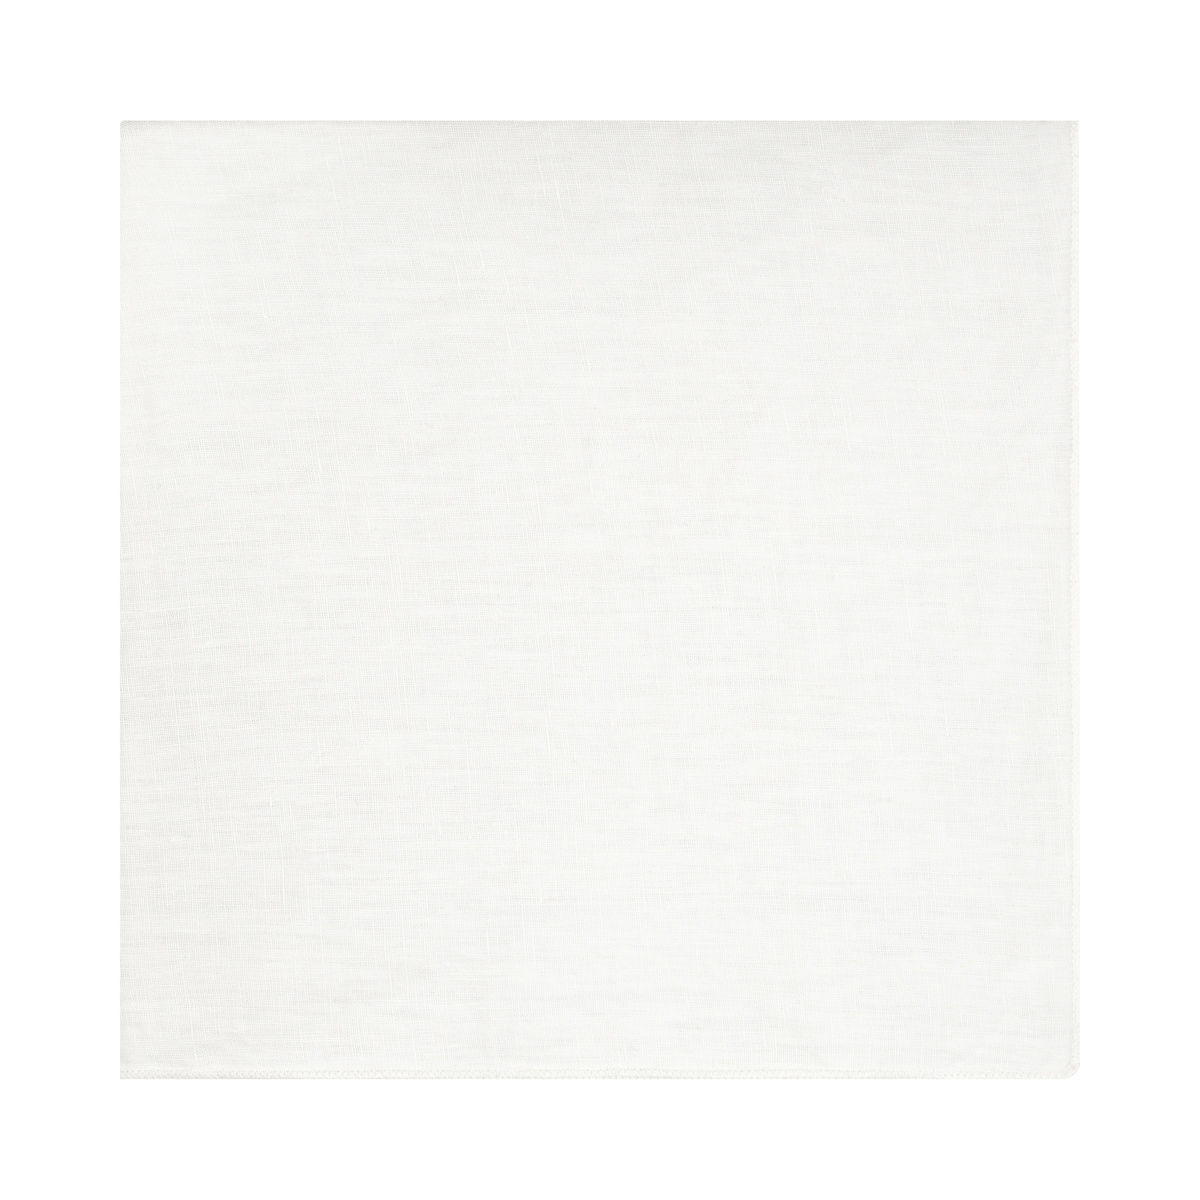 Leinen-Serviette -LINEO- White. Material: Linen. Von Blomus.